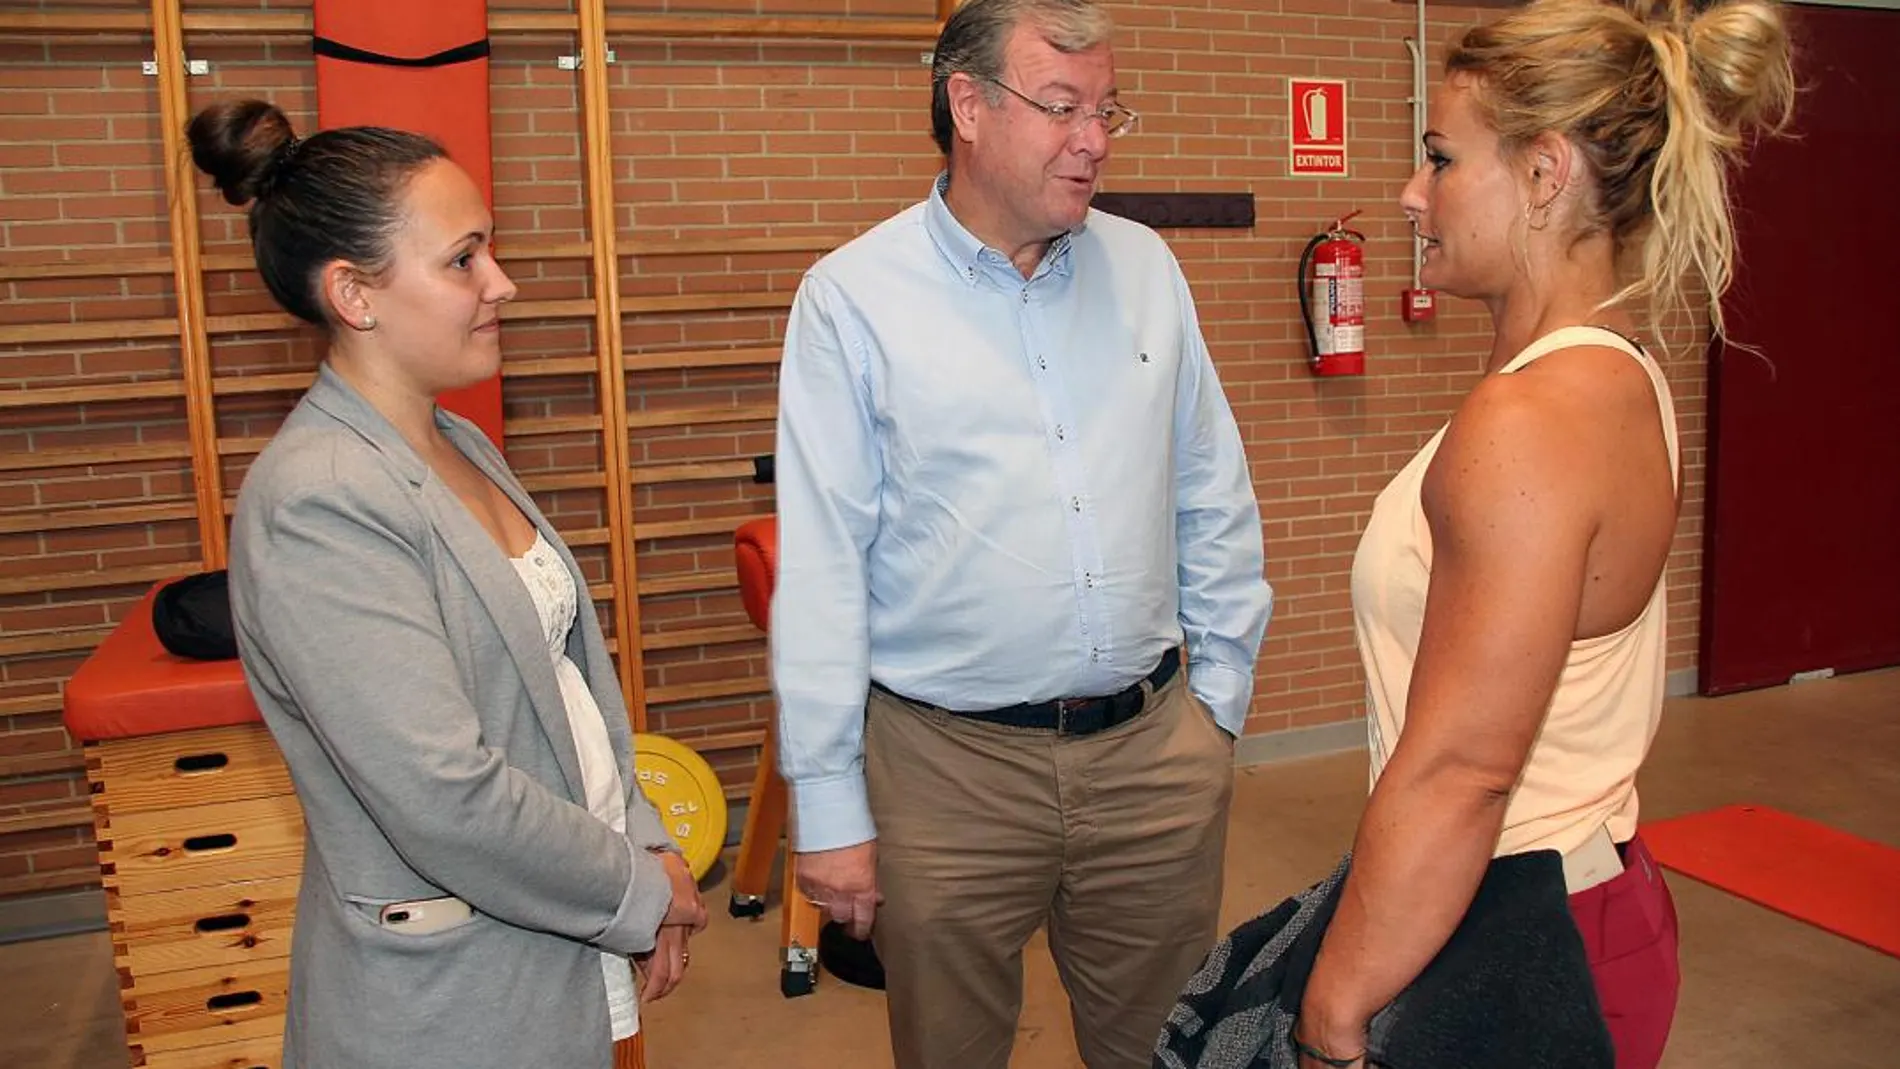 El alcalde de León, Antonio Silván, visita a los miembros del equipo nacional de Halterofilia; en la imagen, con la campeona Lydia Valentín y la concejala Marta Macías